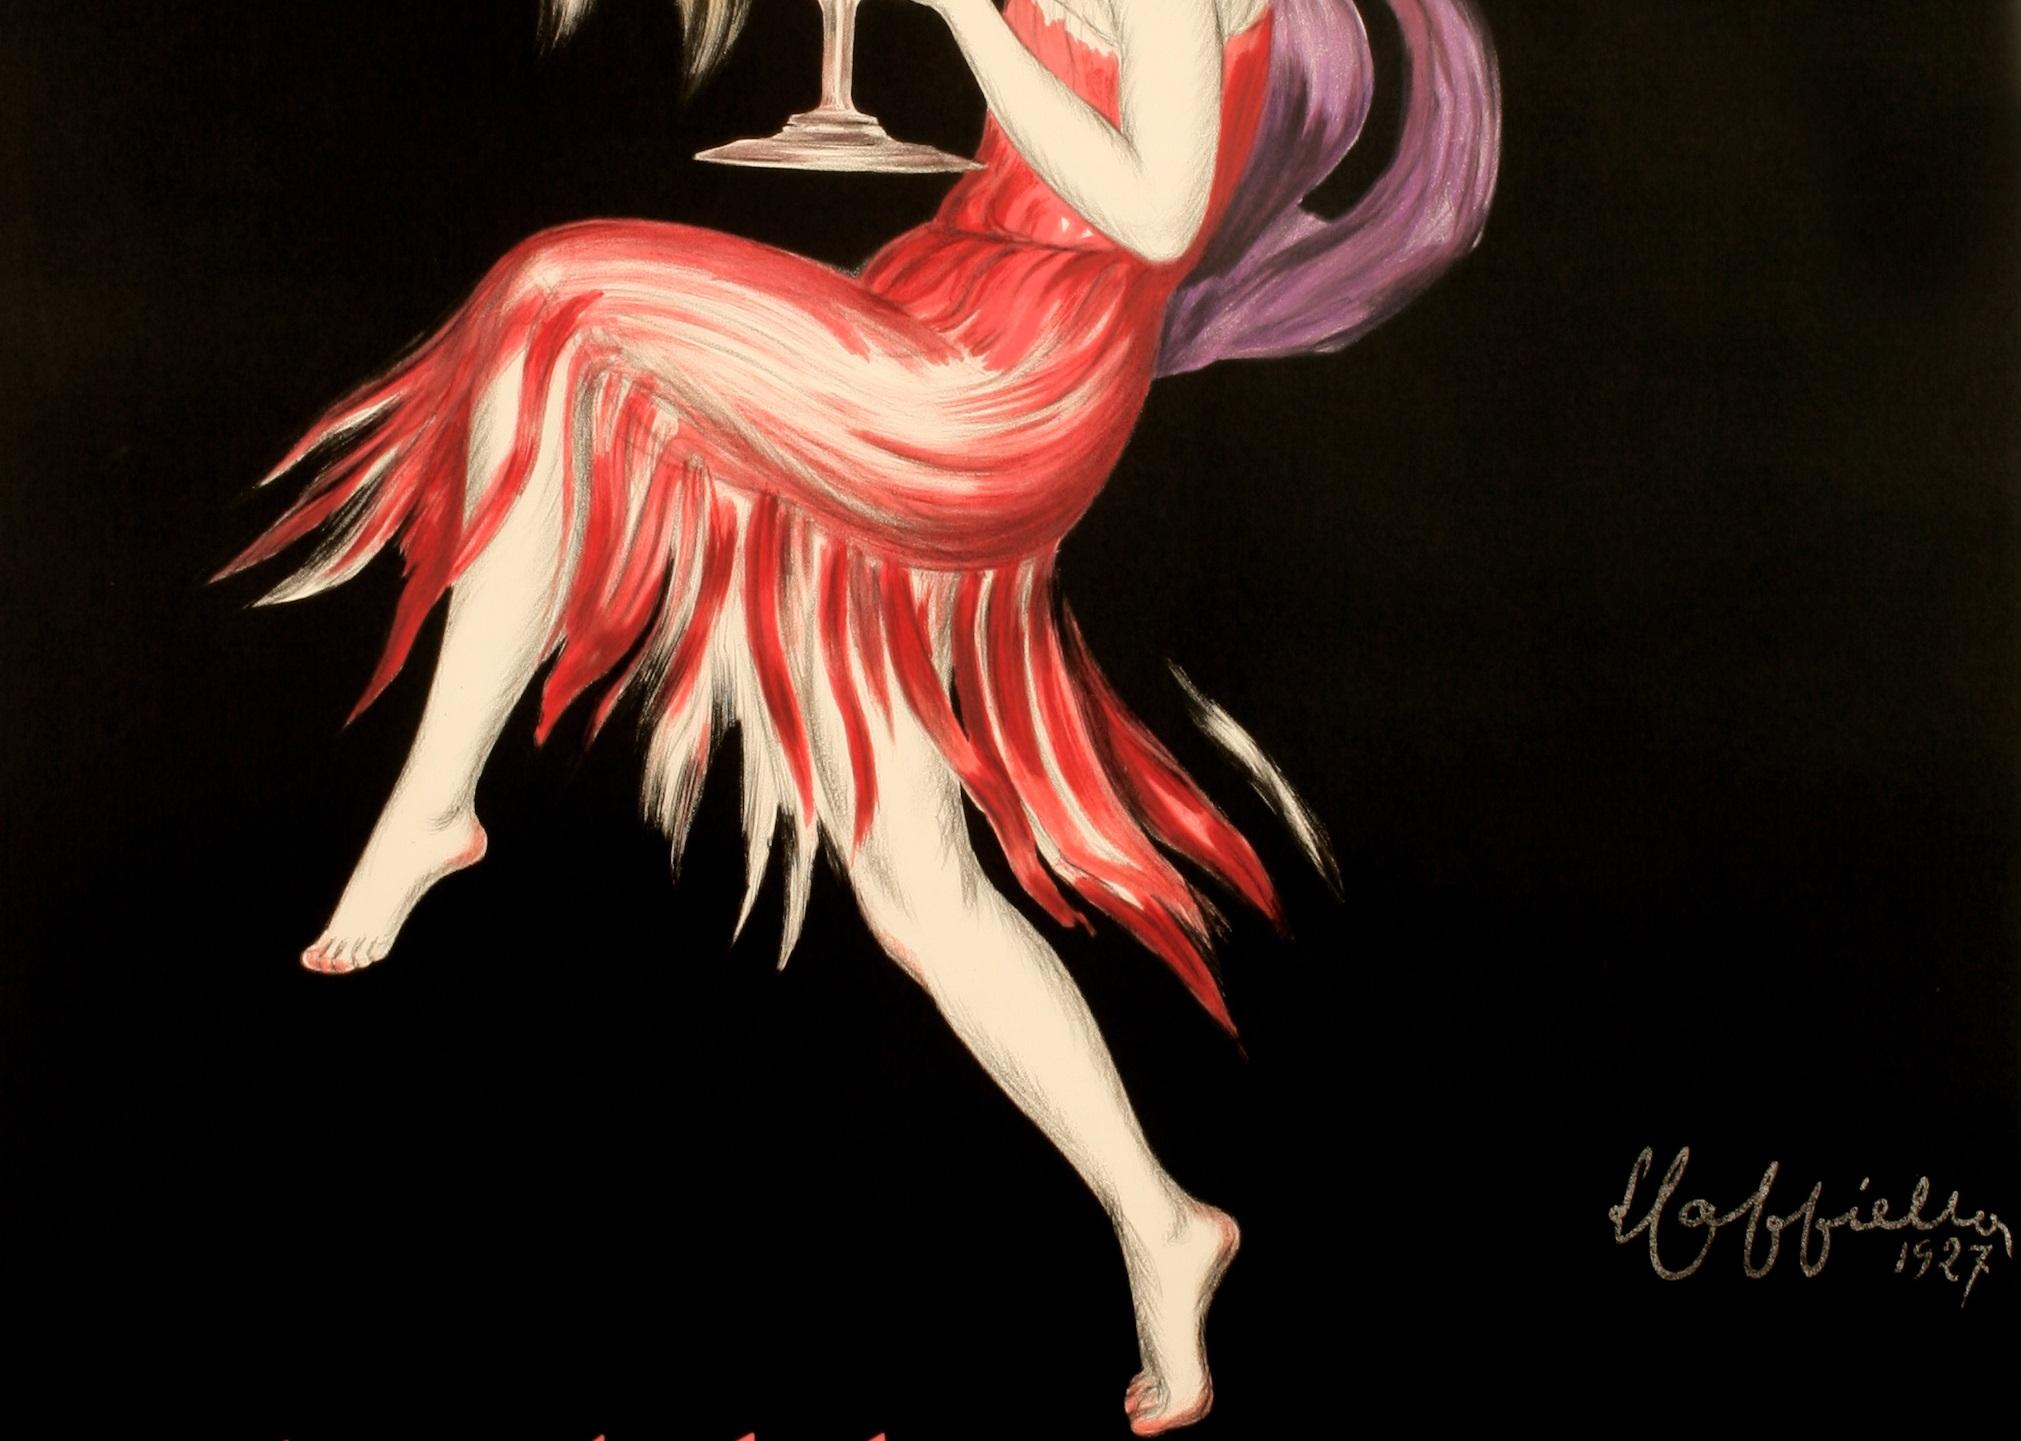 Art Deco Cappiello, Original Alcohol Poster, Cognac Monnet, Salamander, Liquor, Sun, 1927 For Sale